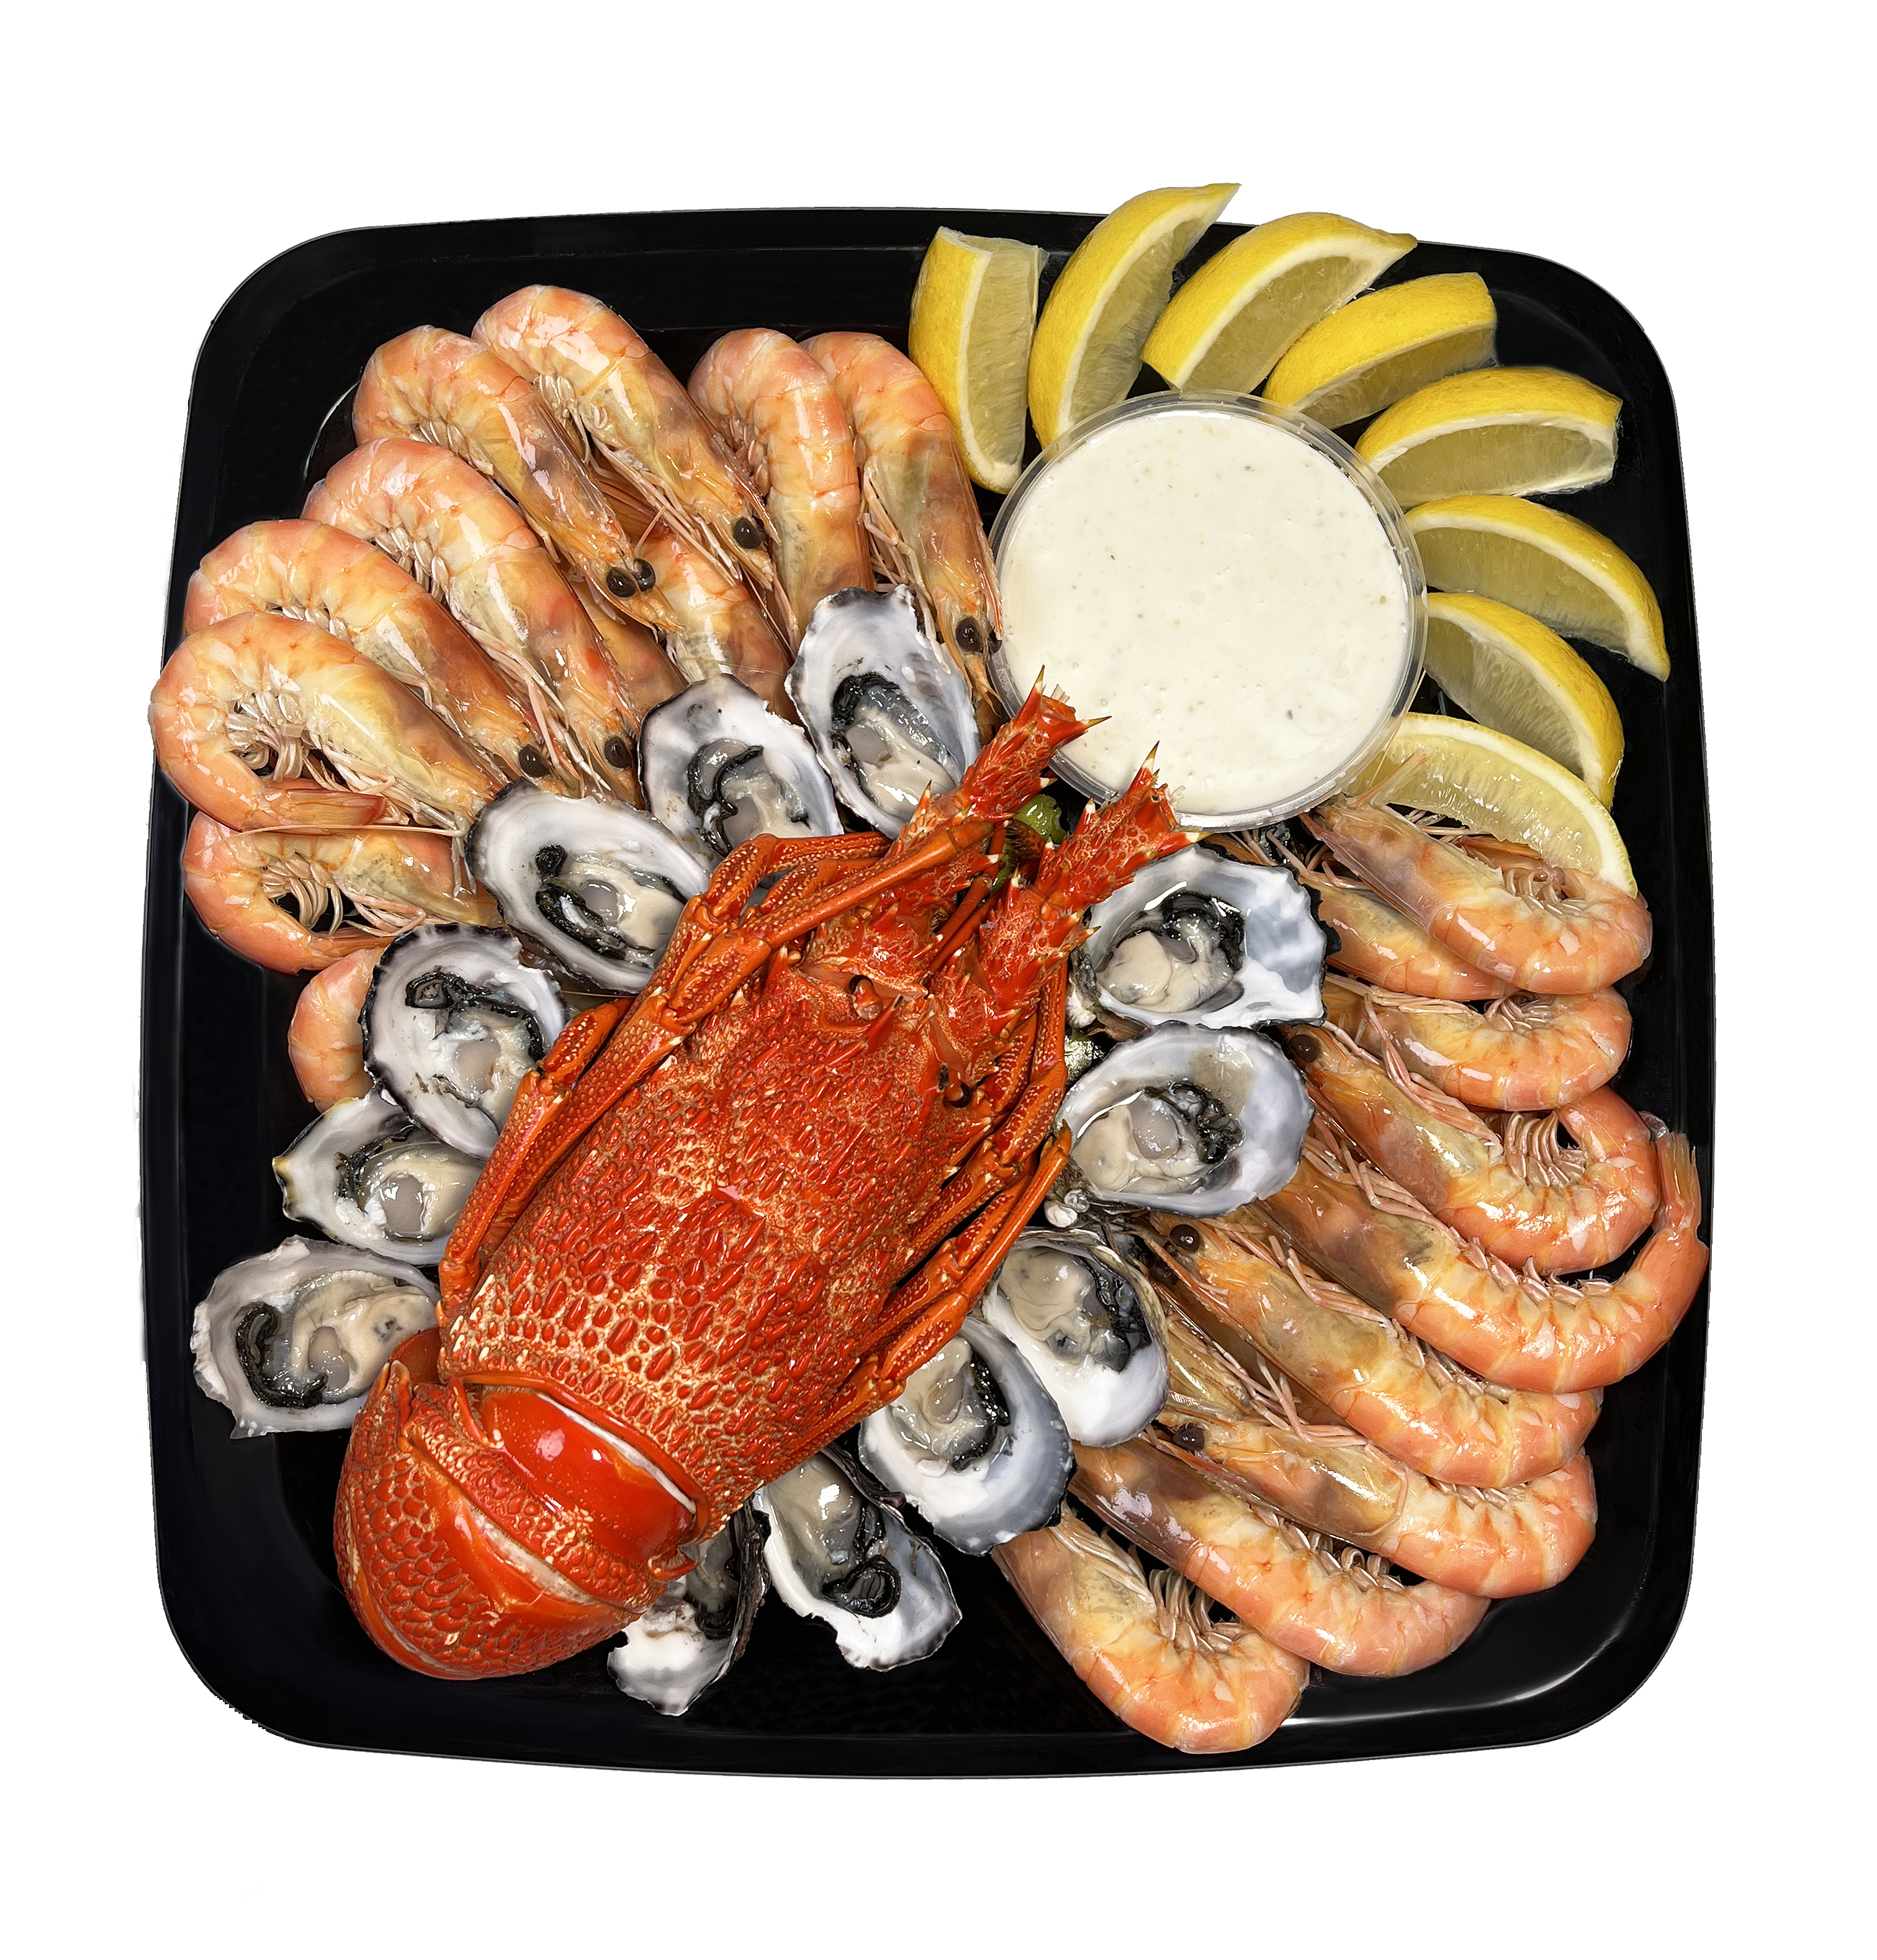 SA Rock Lobster Seafood Platter (SA Only)